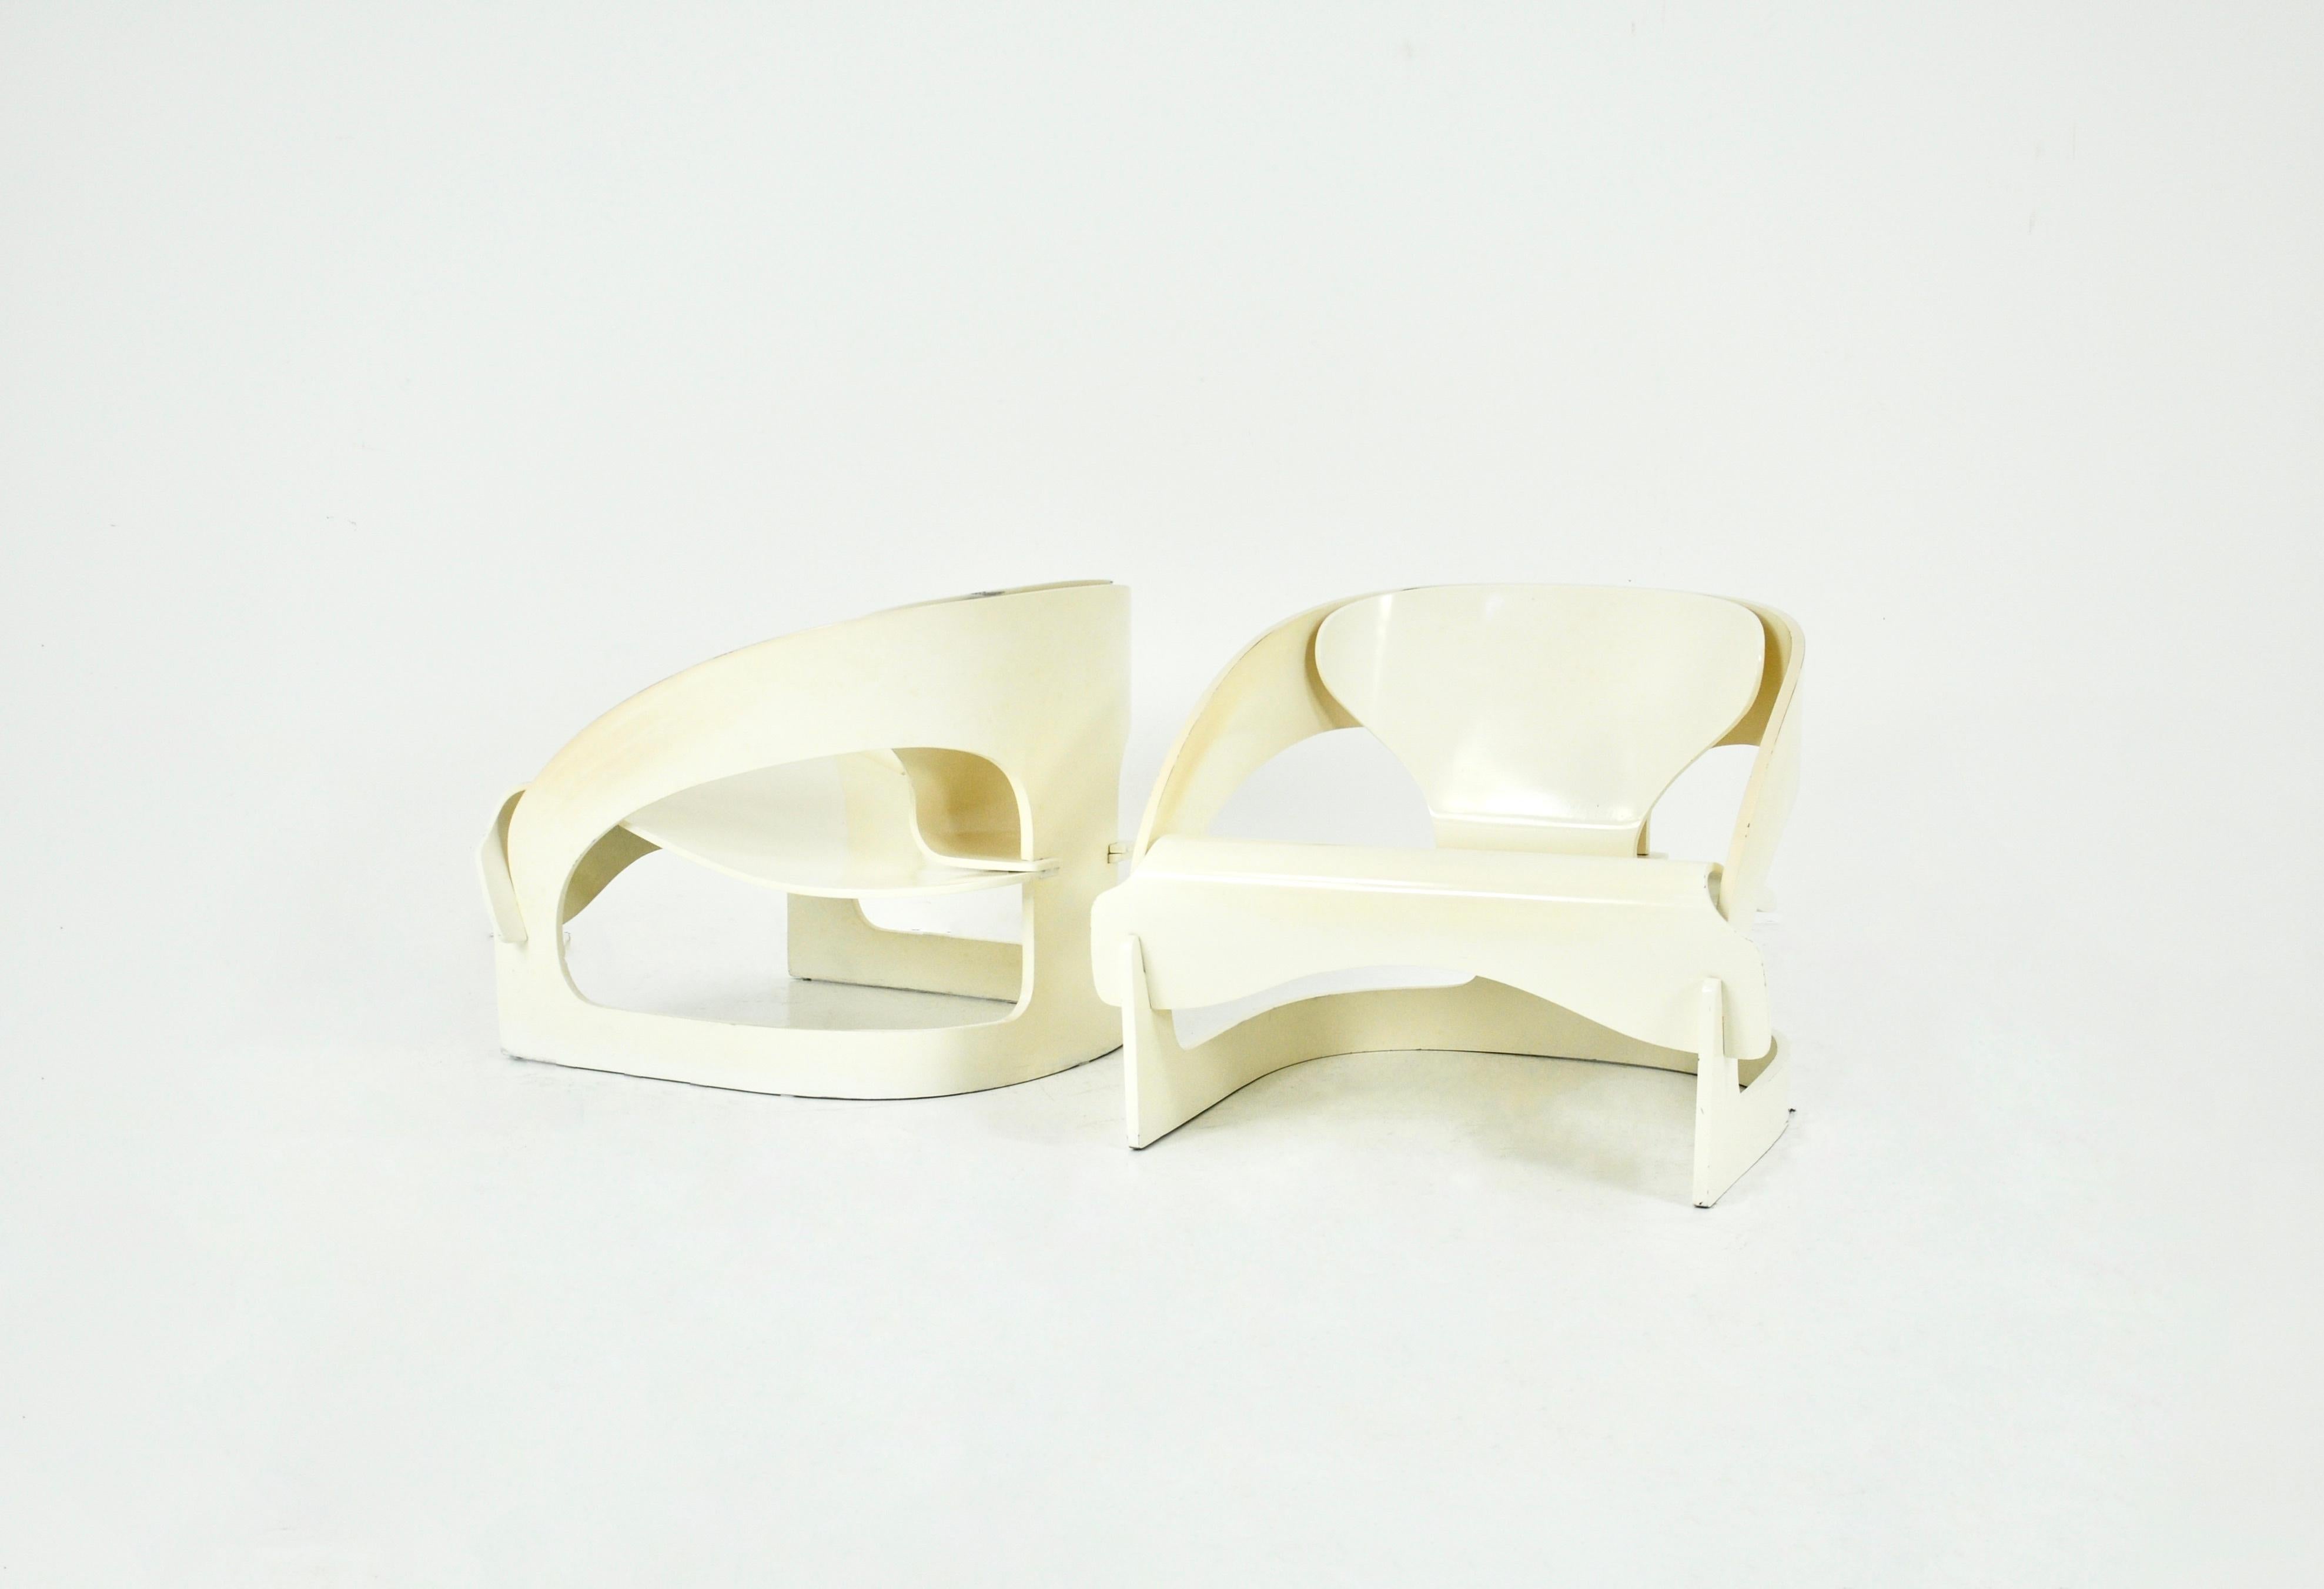 Satz von 2 weißen Holzsesseln, entworfen von Joe Colombo, Modell 4801.  Nummerierung 121. Sitzhöhe 34 cm. Zeit- und altersbedingte Abnutzung.